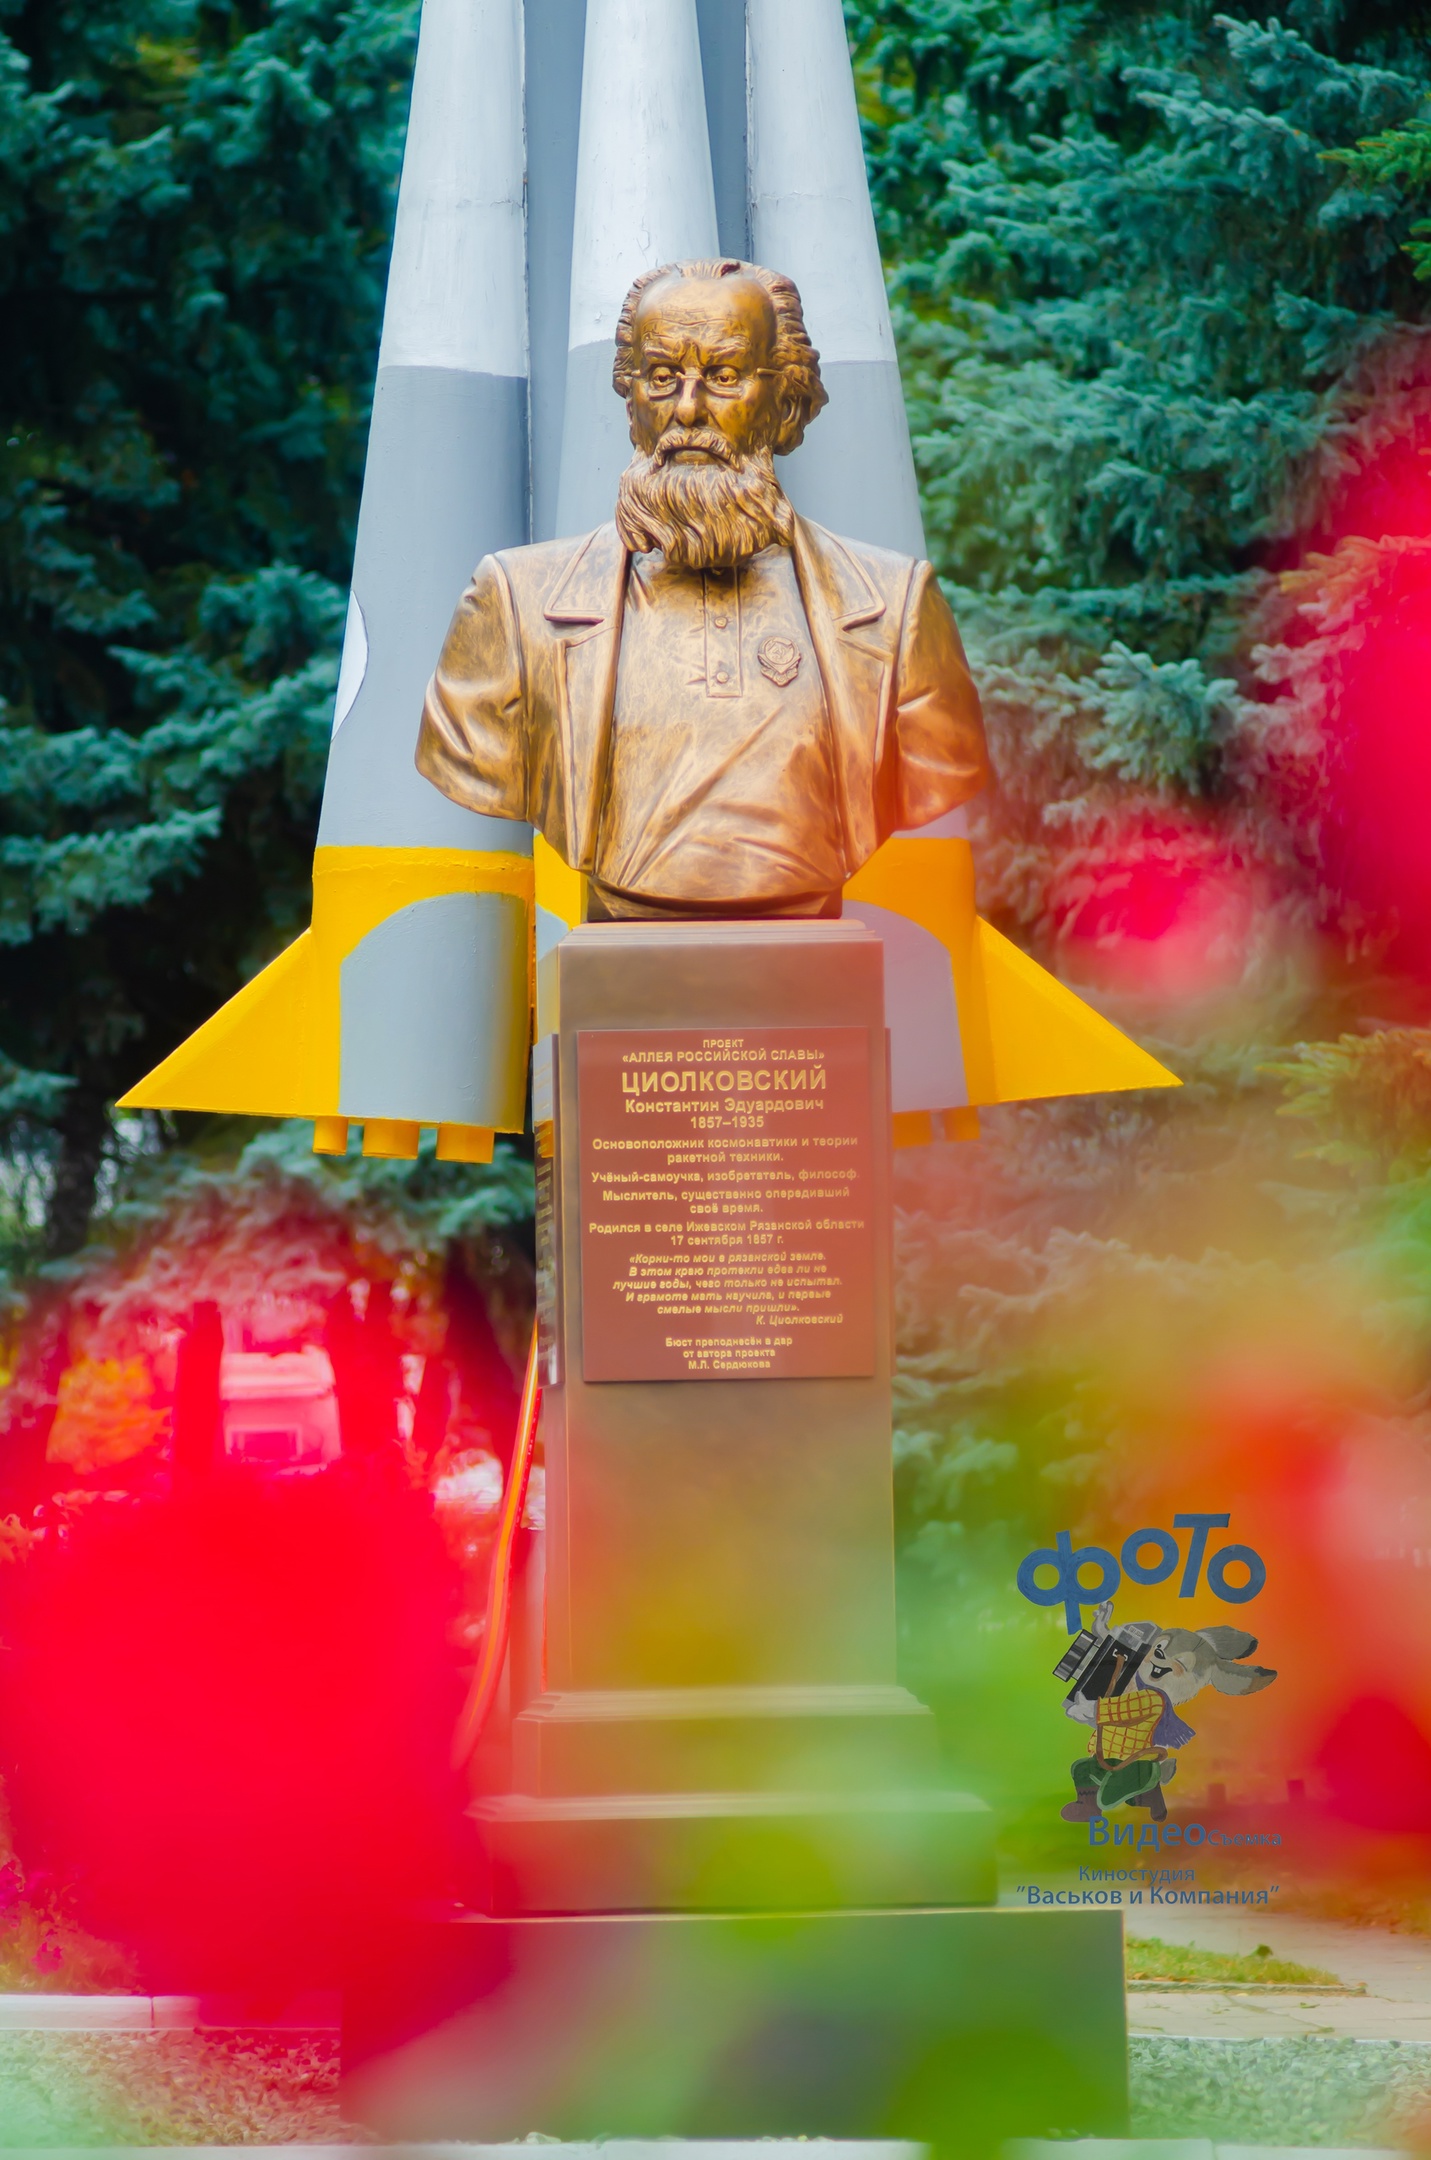 циолковский константин эдуардович фото памятника в рязани